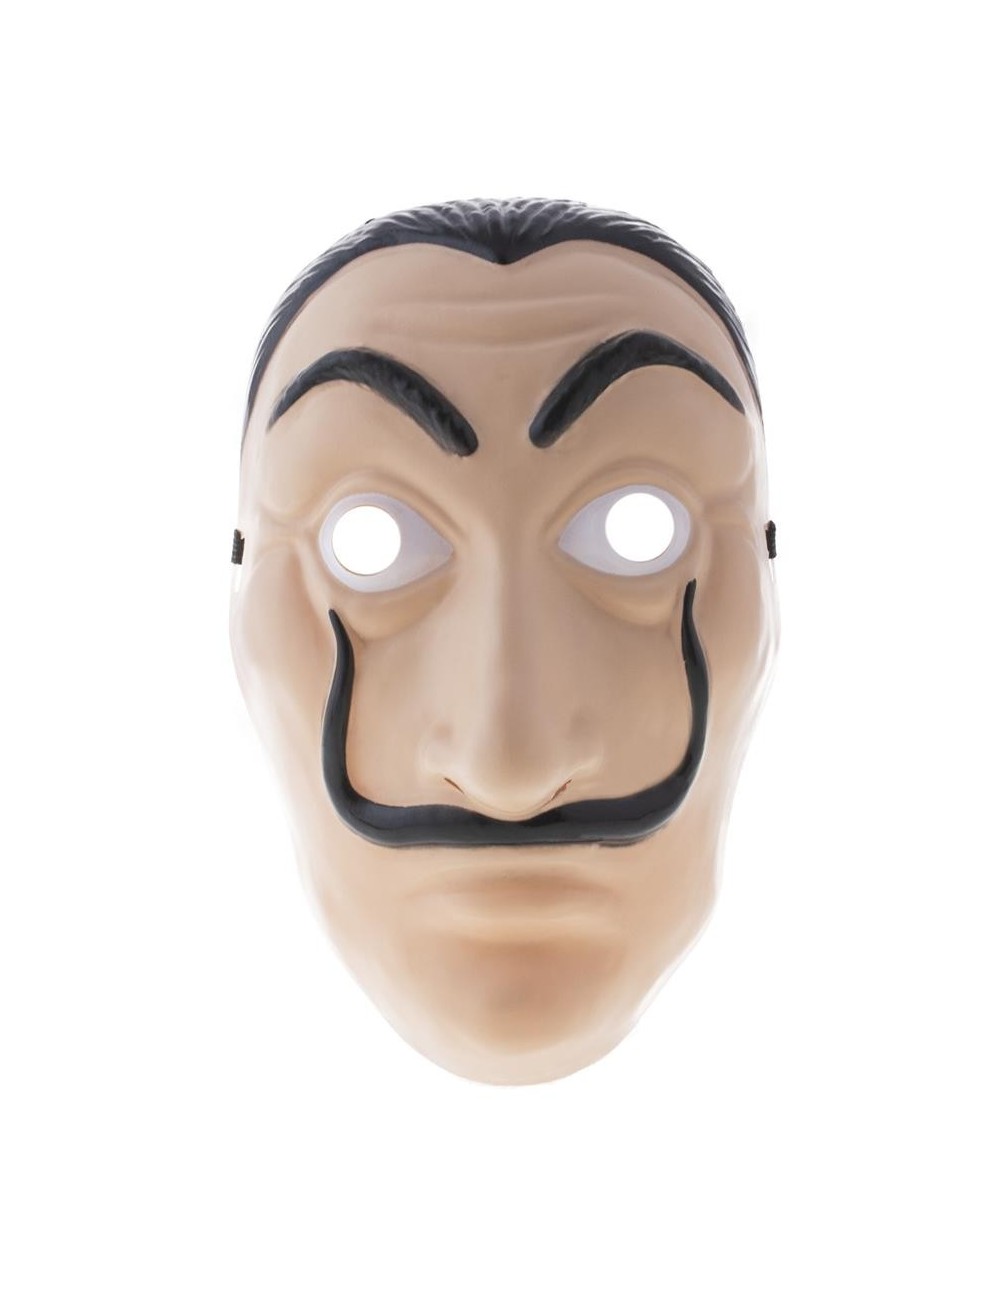 Masque visage Salvadore Dali